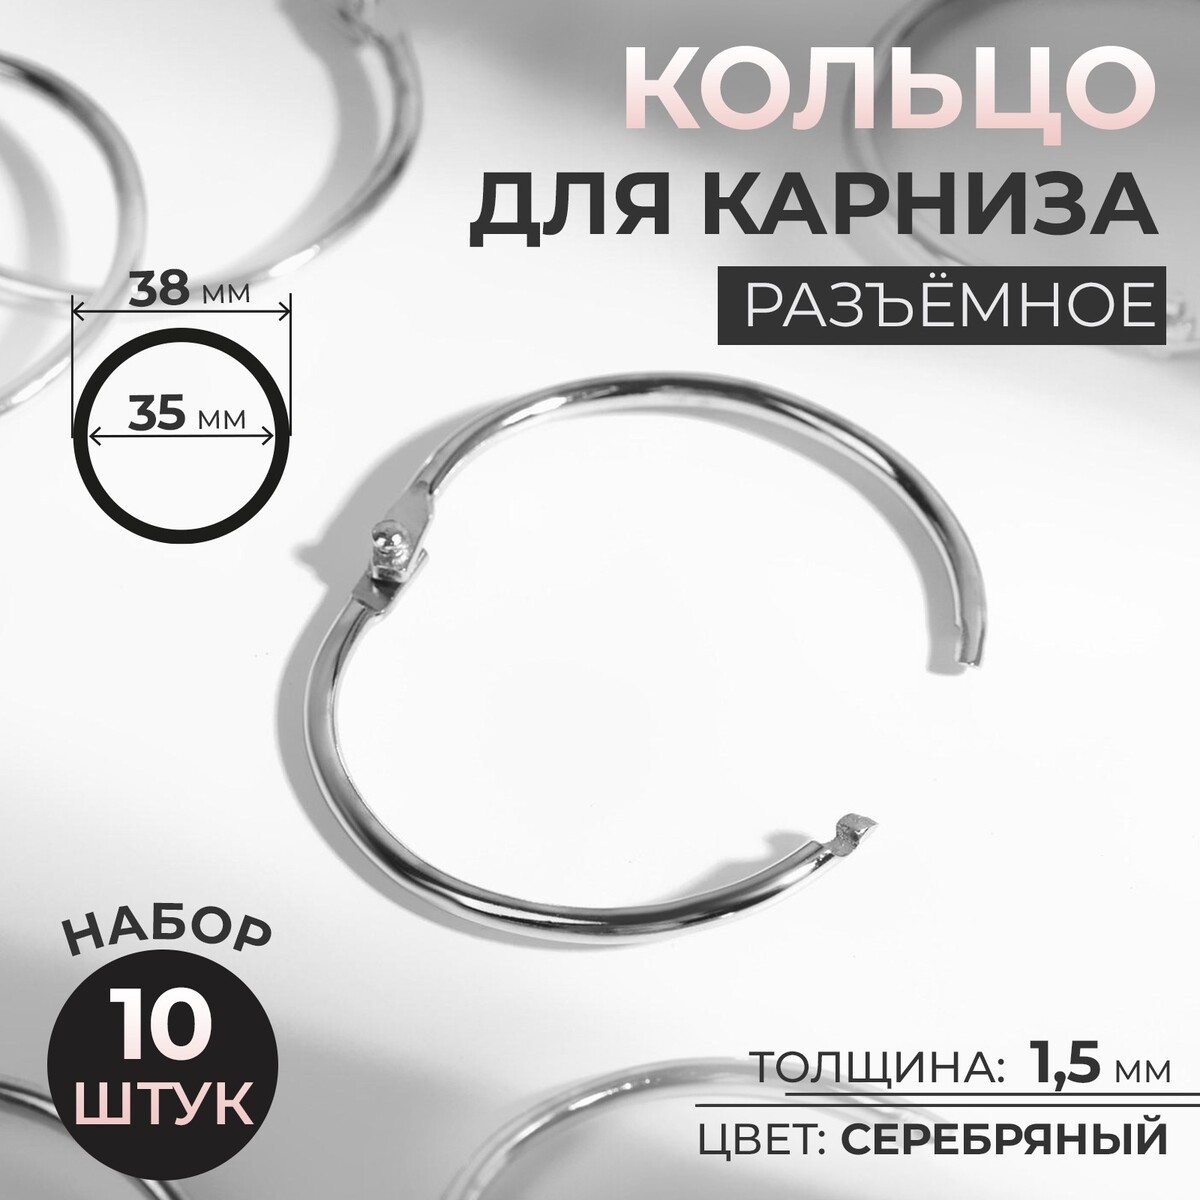 Кольцо для карниза, разъемное, d = 35/38 мм, 10 шт, цвет серебряный кольцо для карниза d 40 50 мм 10 шт серебряный